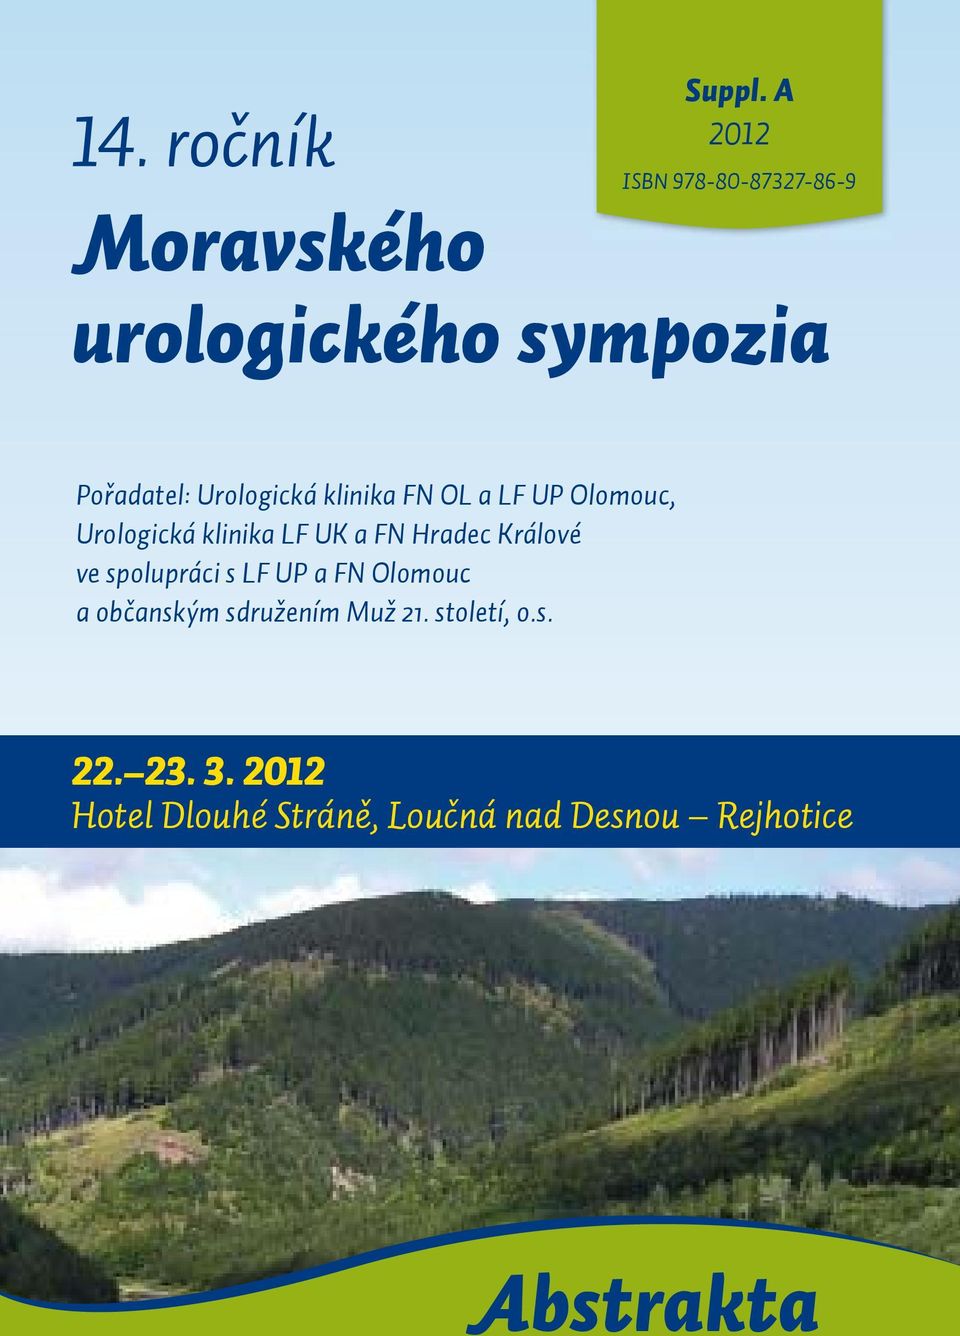 FN OL a LF UP Olomouc, Urologická klinika LF UK a FN Hradec Králové ve spolupráci